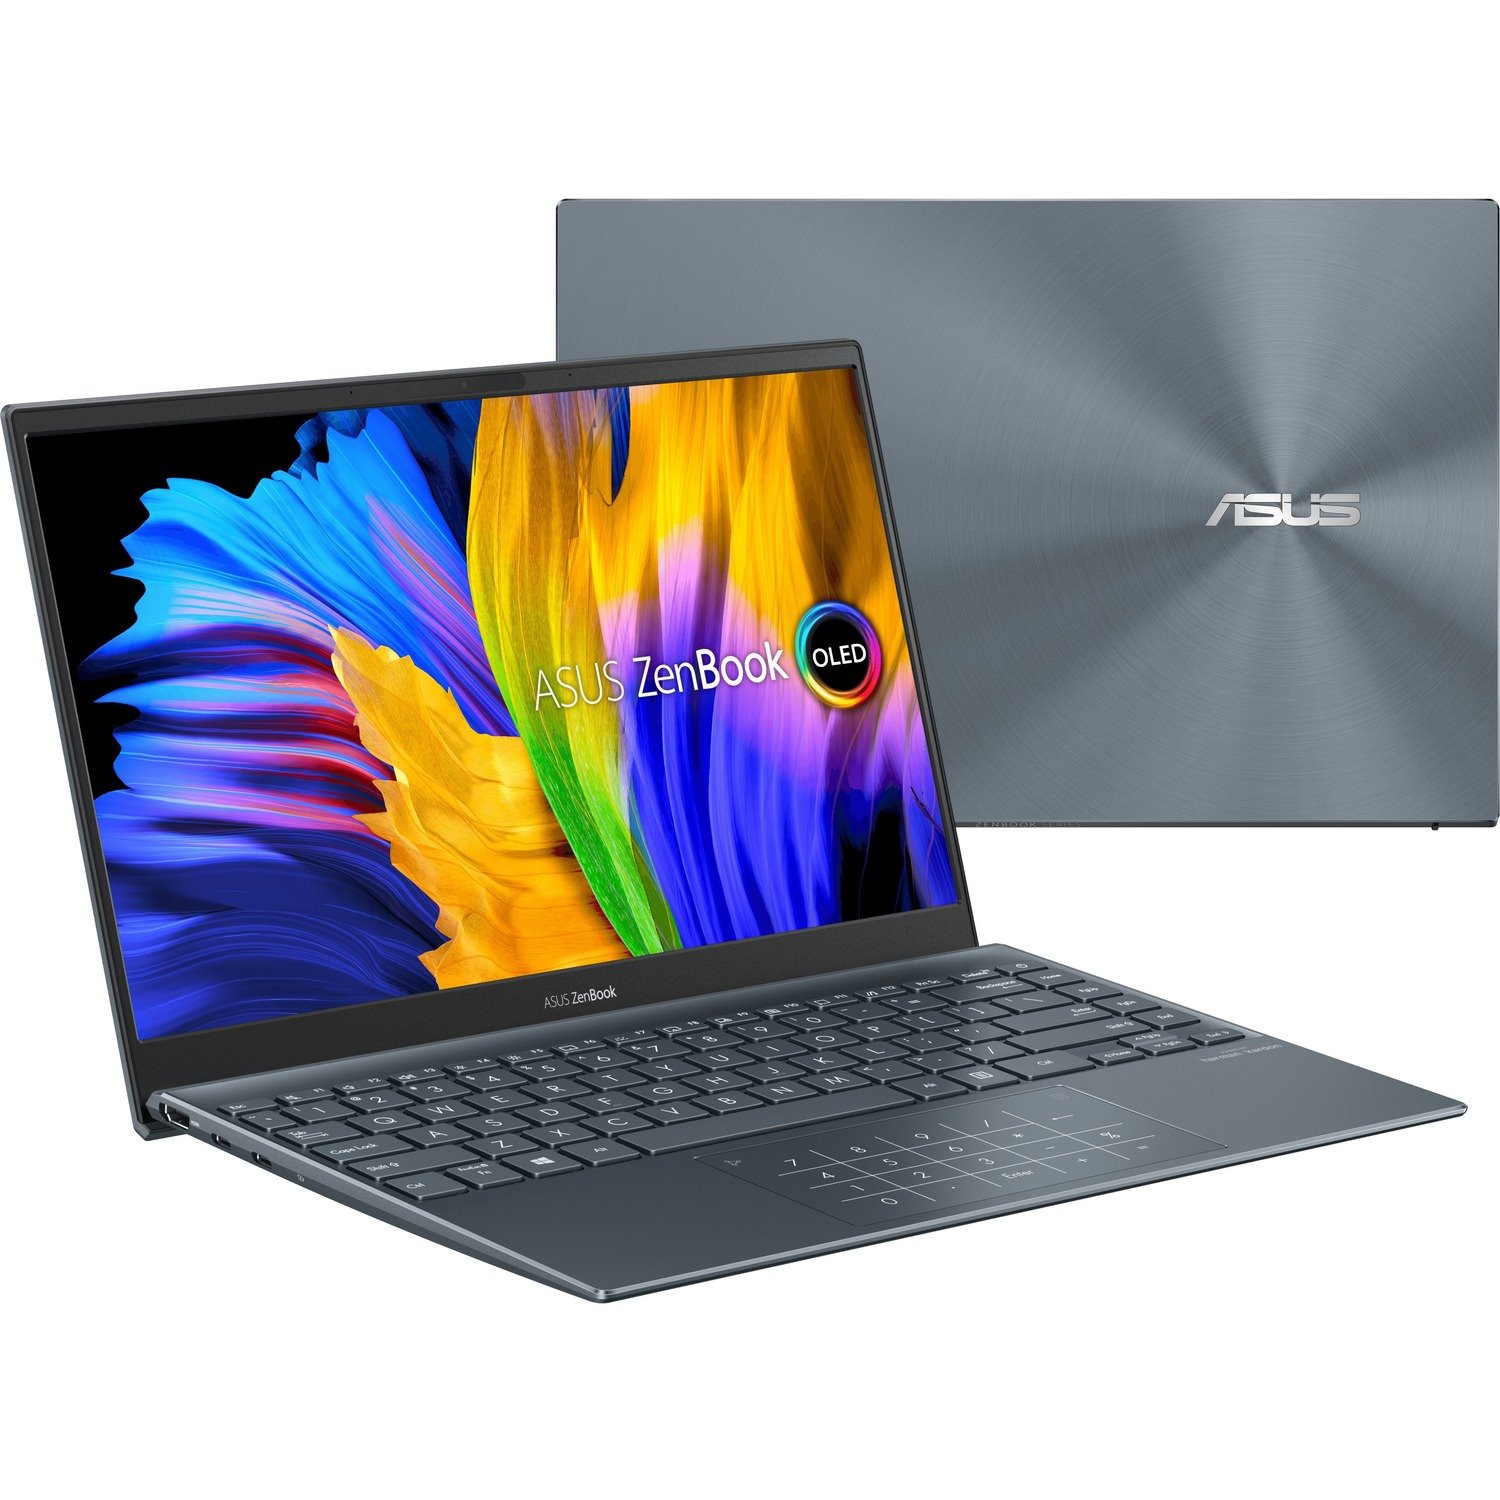 Asus ZenBook 13 UM325 UM325UA-DH51 13.3" Notebook - Full HD - 1920 x 1080 - AMD Ryzen 5 5500U Hexa-core (6 Core) 2.10 GHz - 8 GB Total RAM - 512 GB SSD